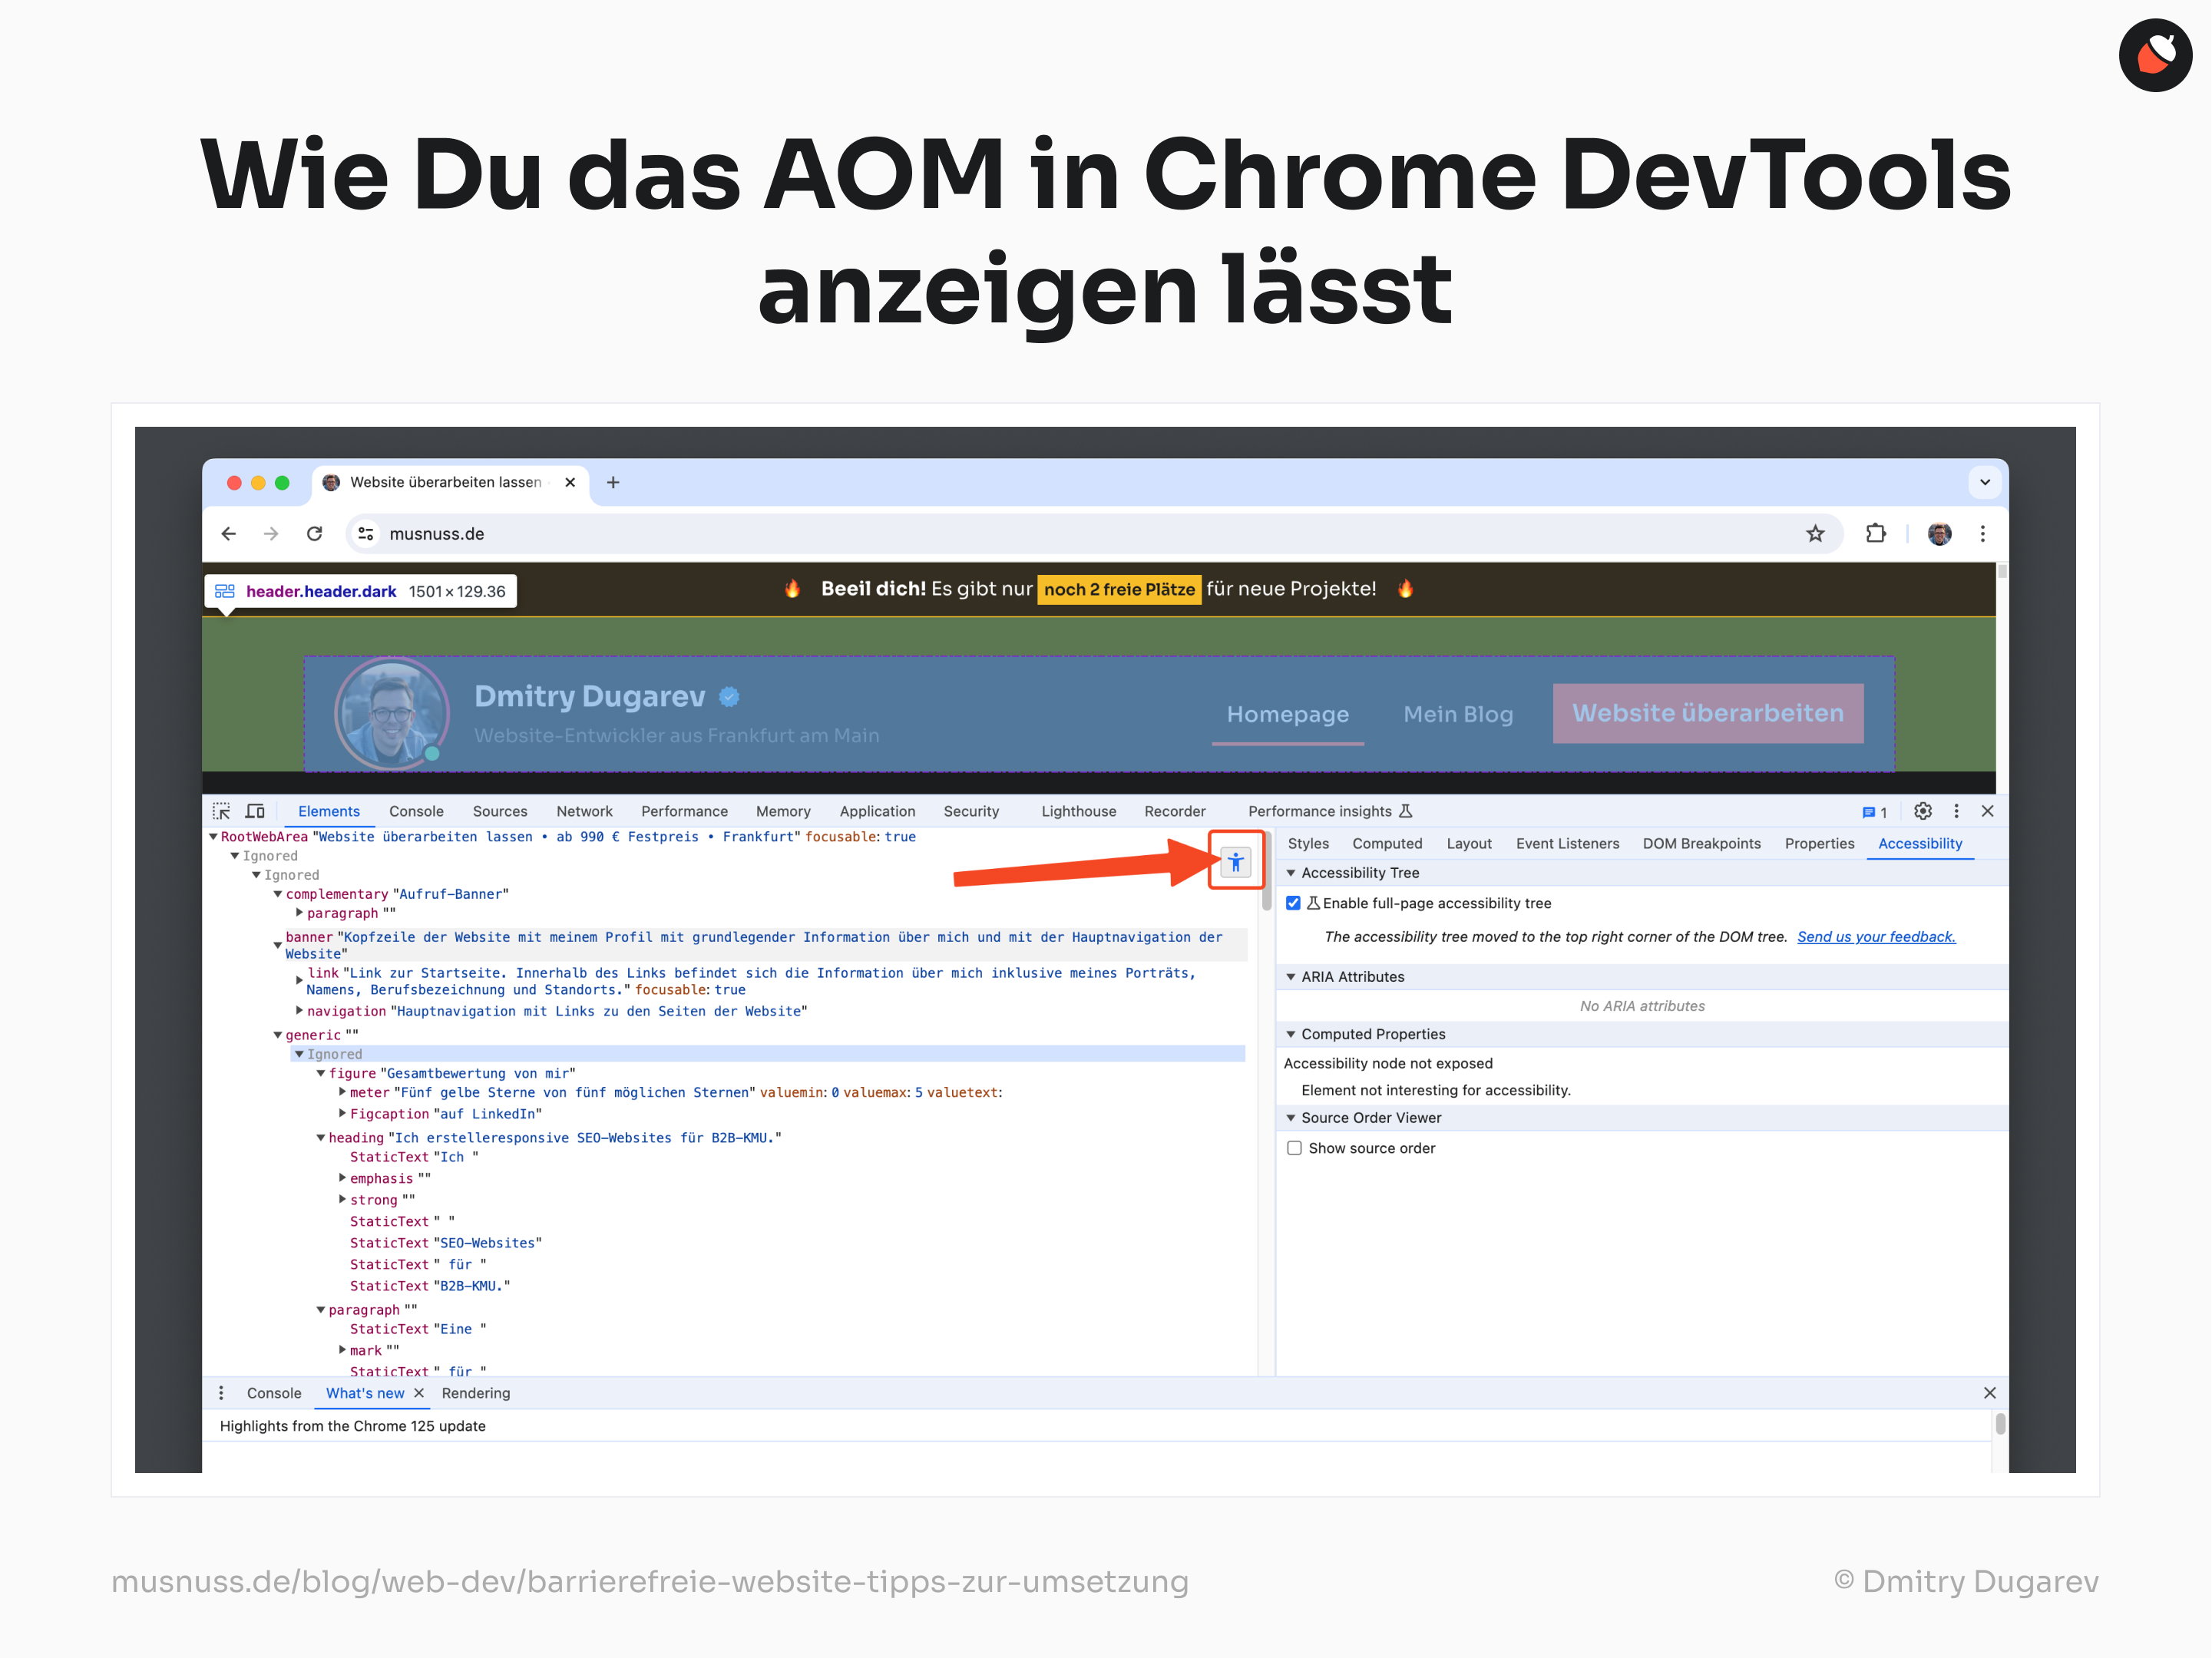 Das Bild zeigt, wie man das AOM (Accessibility Object Model) in den Chrome DevTools anzeigt. Oben steht: „Wie Du das AOM in Chrome DevTools anzeigen lässt“. Es ist ein Screenshot des Chrome-Browsers zu sehen, der die Webseite von Dmitry Dugarev geöffnet hat. Die Entwickler-Tools sind ebenfalls geöffnet, und der „Accessibility“-Reiter ist ausgewählt. Ein roter Pfeil zeigt auf das Symbol zum Aktivieren des Accessibility-Tree. Am unteren Rand sind die Quelle „musnuss.de/blog/web-dev/barrierefreie-website-tipps-zur-umsetzung“ und der Illustrator „© Dmitry Dugarev“ angegeben.